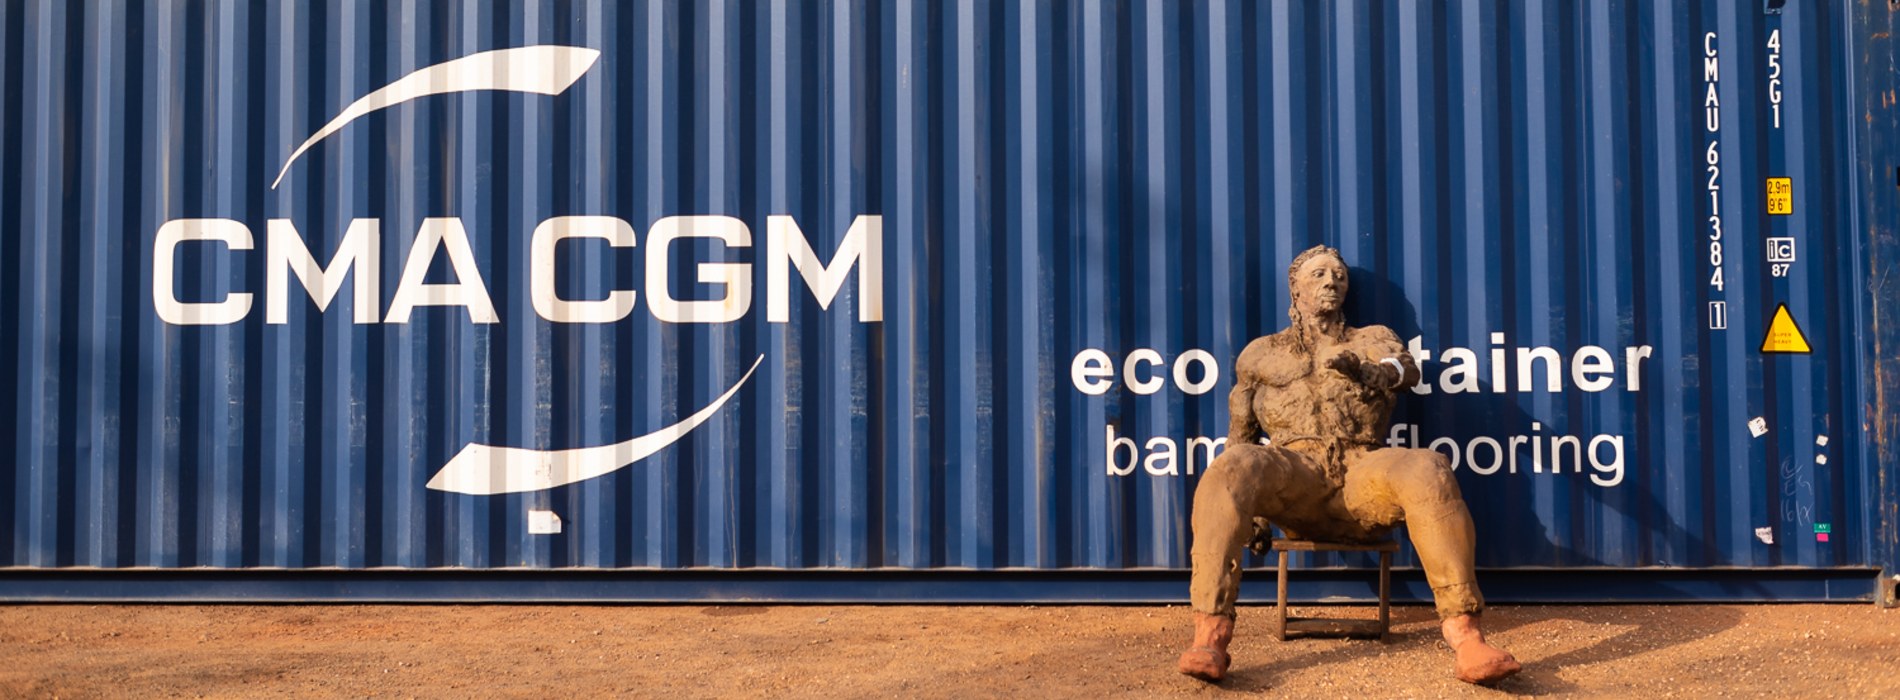 Le Groupe CMA CGM transporte 35 œuvres majeures du sculpteur Ousmane SOW entre le Sénégal et la France